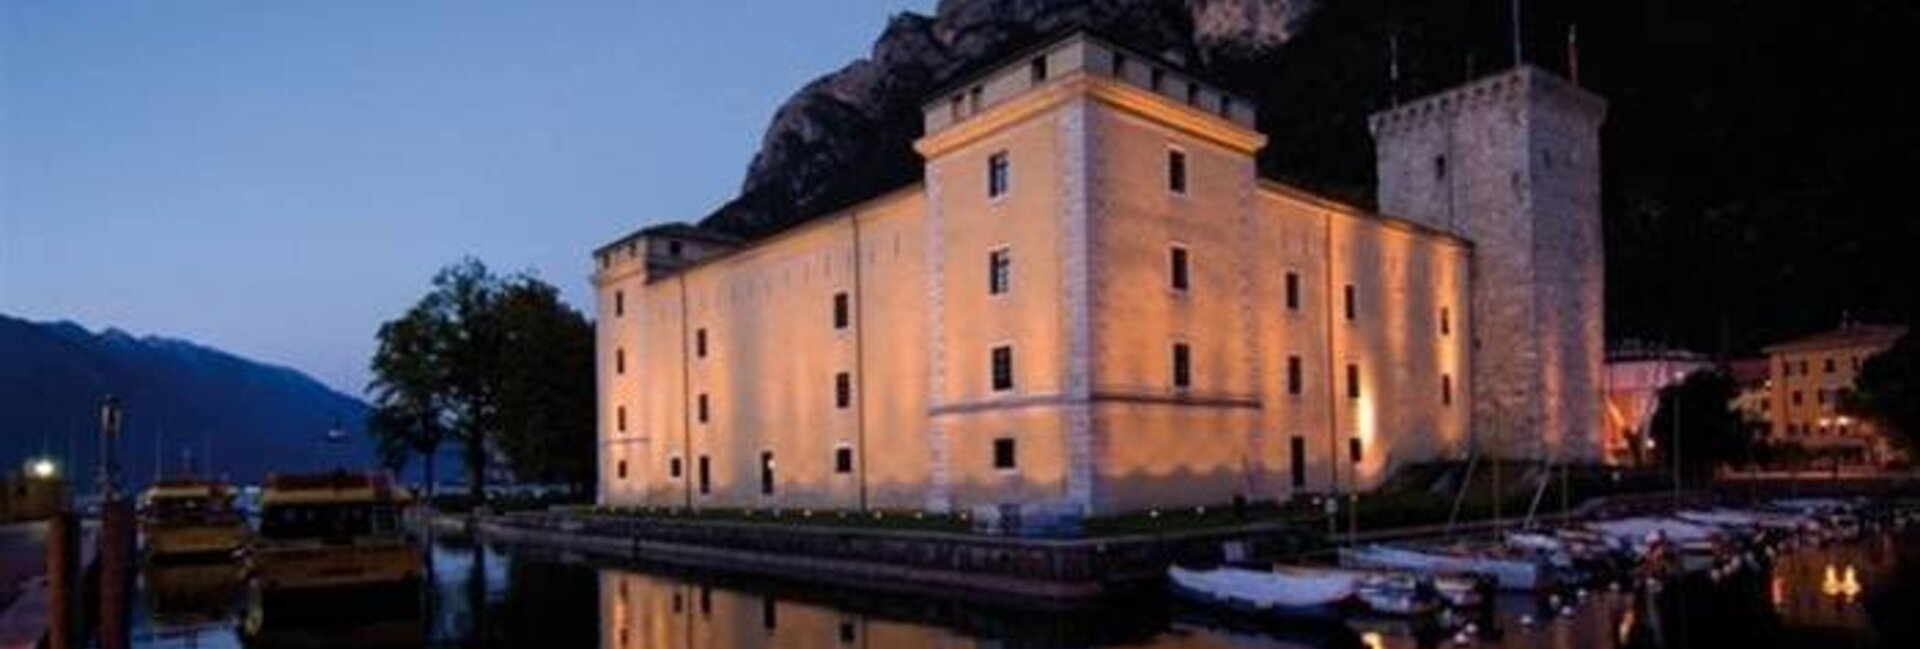 Riva del Garda - Lake Garda - Rocca di Riva